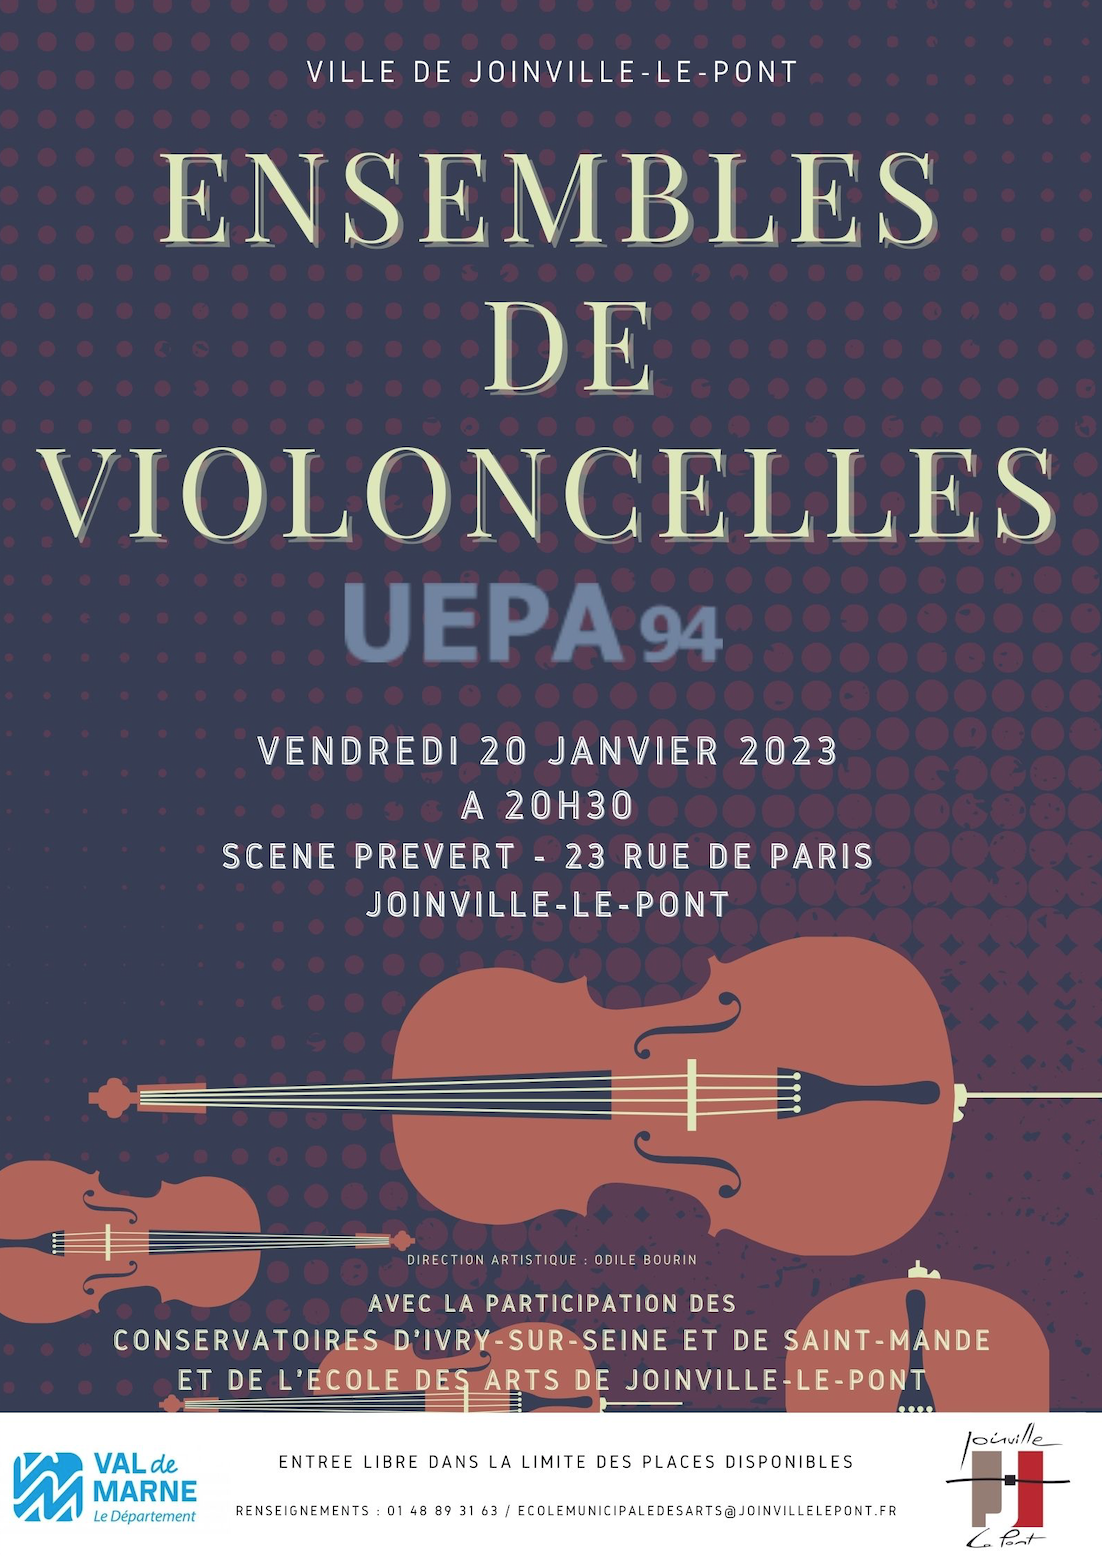 Le projet « Ensemble de Violoncelles » – Concert à Joinville-le-Pont le 20 janvier 2023